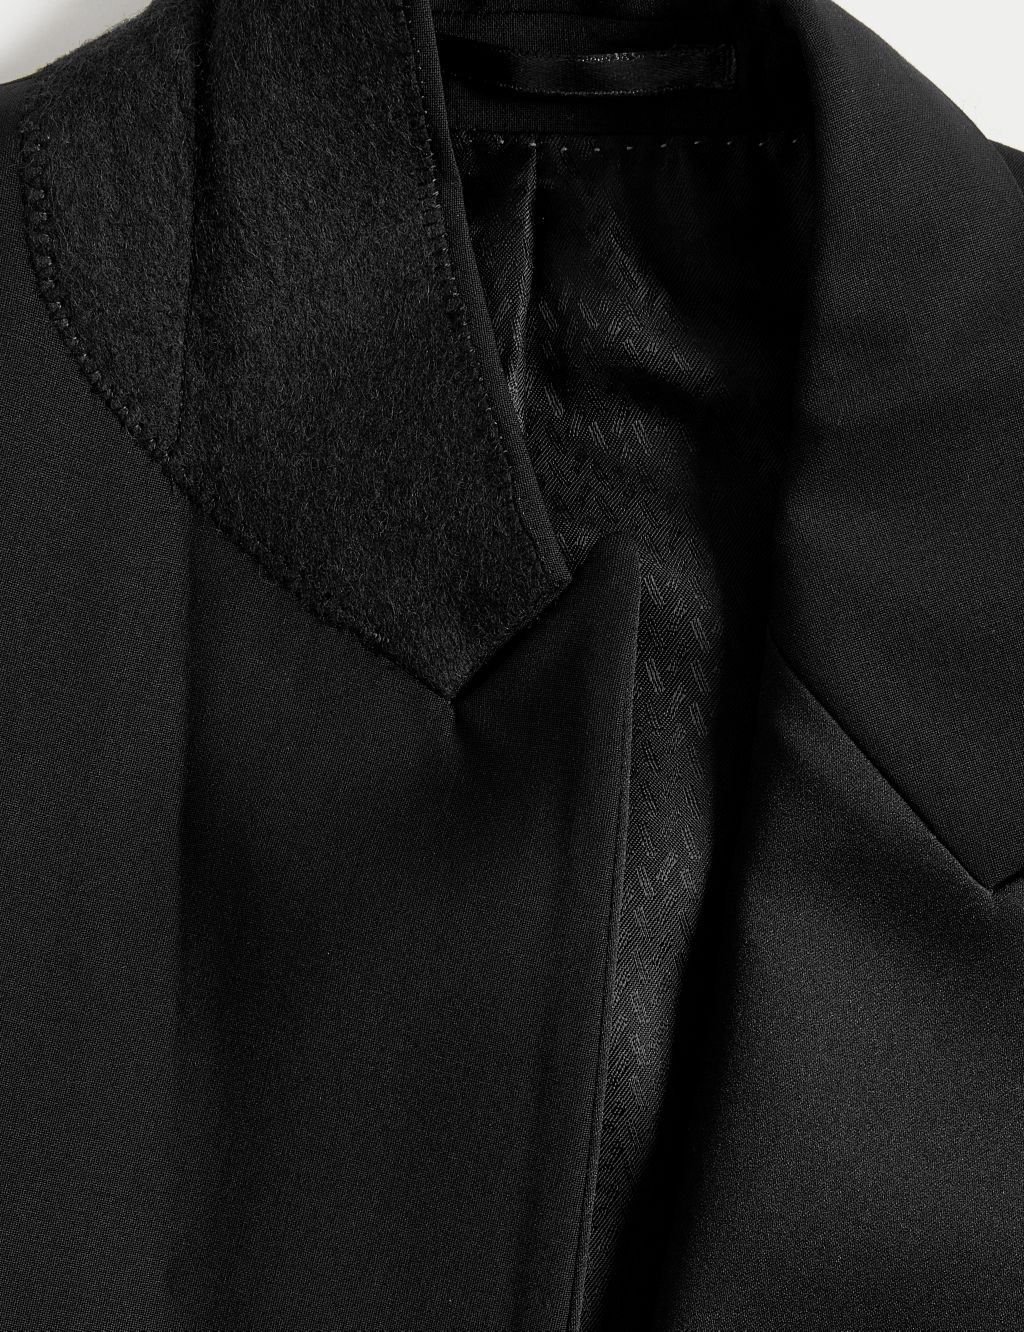 Slim Fit Wool Rich Tuxedo Jacket image 2